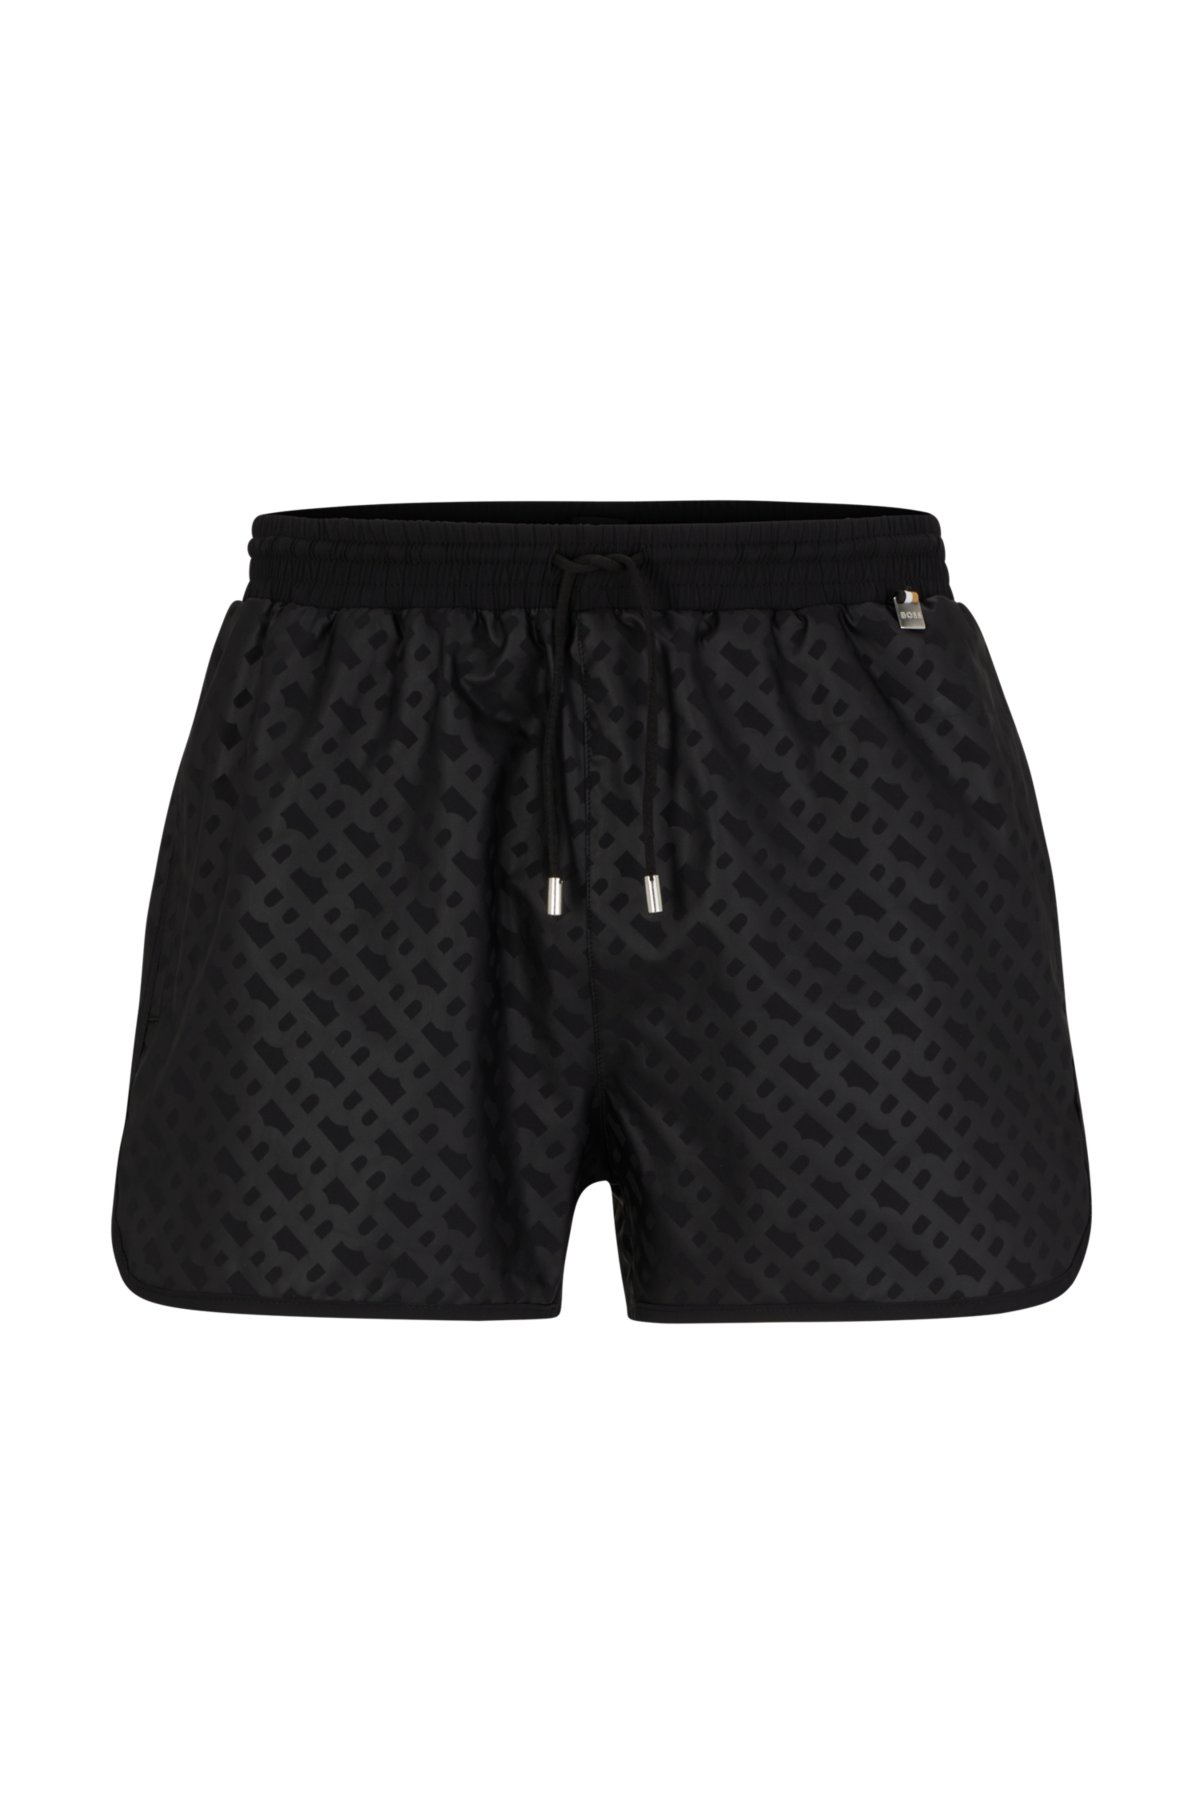 Louis Vuitton Shorts SOLD  Louis vuitton, Vuitton, Swim shorts